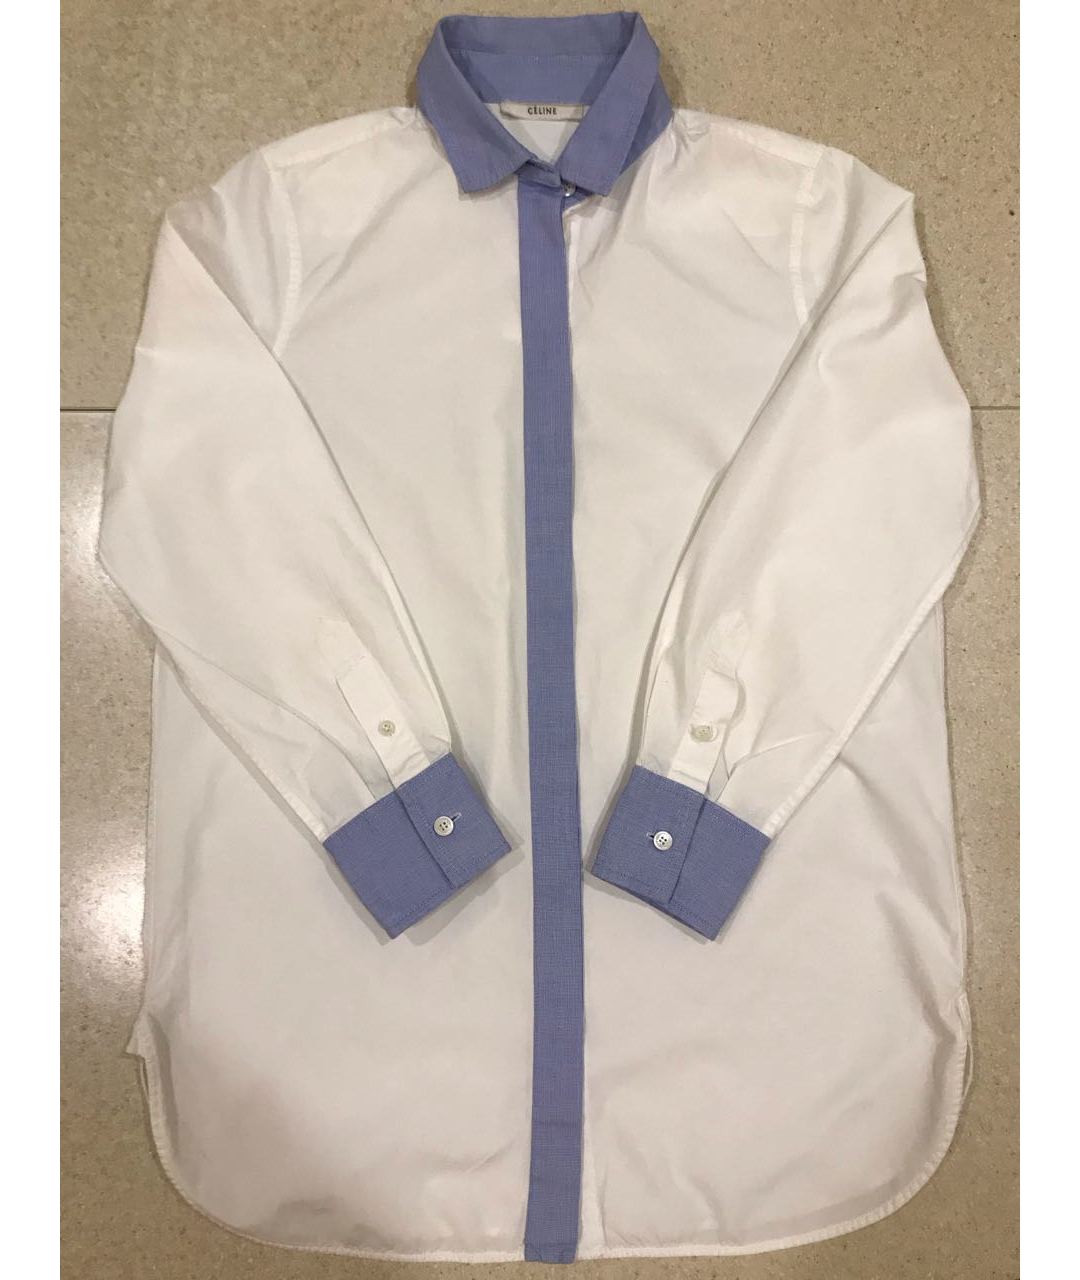 CELINE PRE-OWNED Белая хлопковая рубашка, фото 5